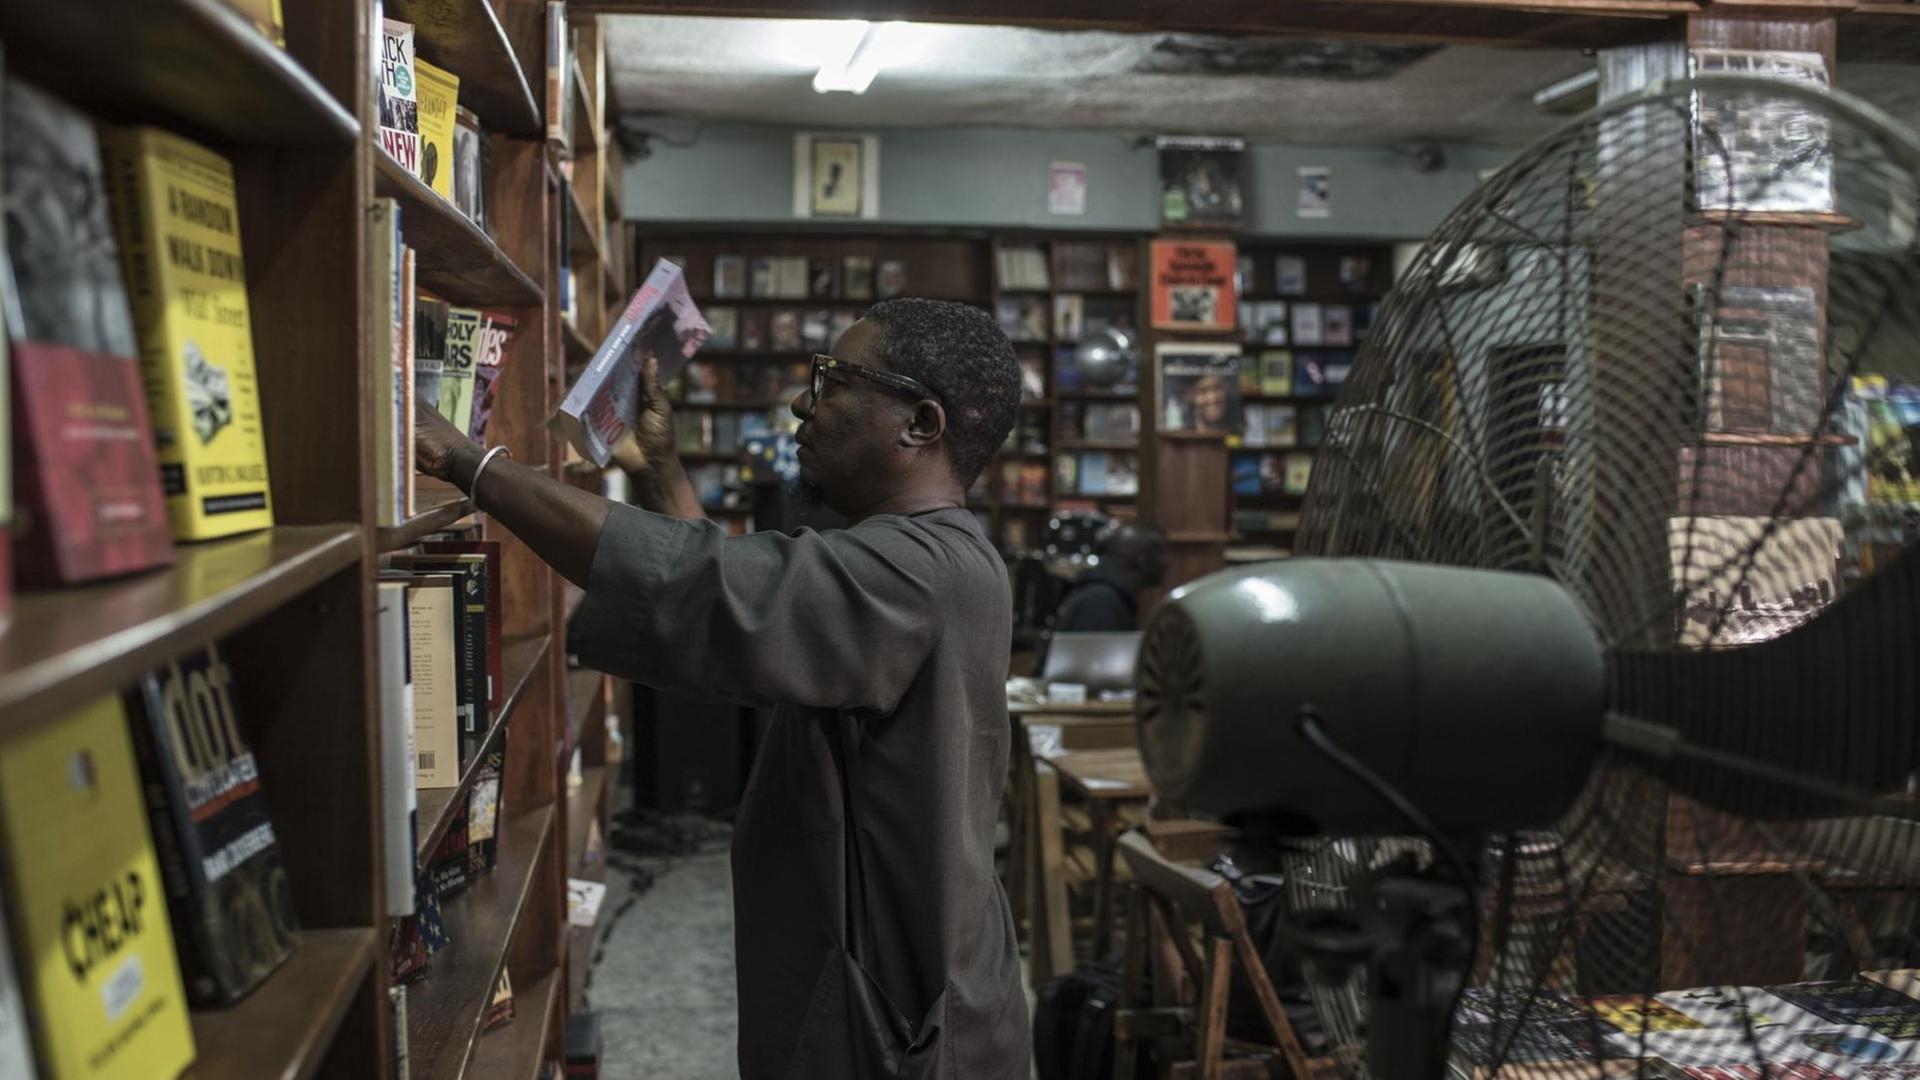 Der Inhaber von The Jazz Hole, Kunle Tejuoso, ordnet die deckenhohen Bücherregale in seinem Laden, während ein großer Ventilator für Abkühlung sorgt. The Jazz Hole ist ein unabhängiger Platten- und Buchladen in Lagos.